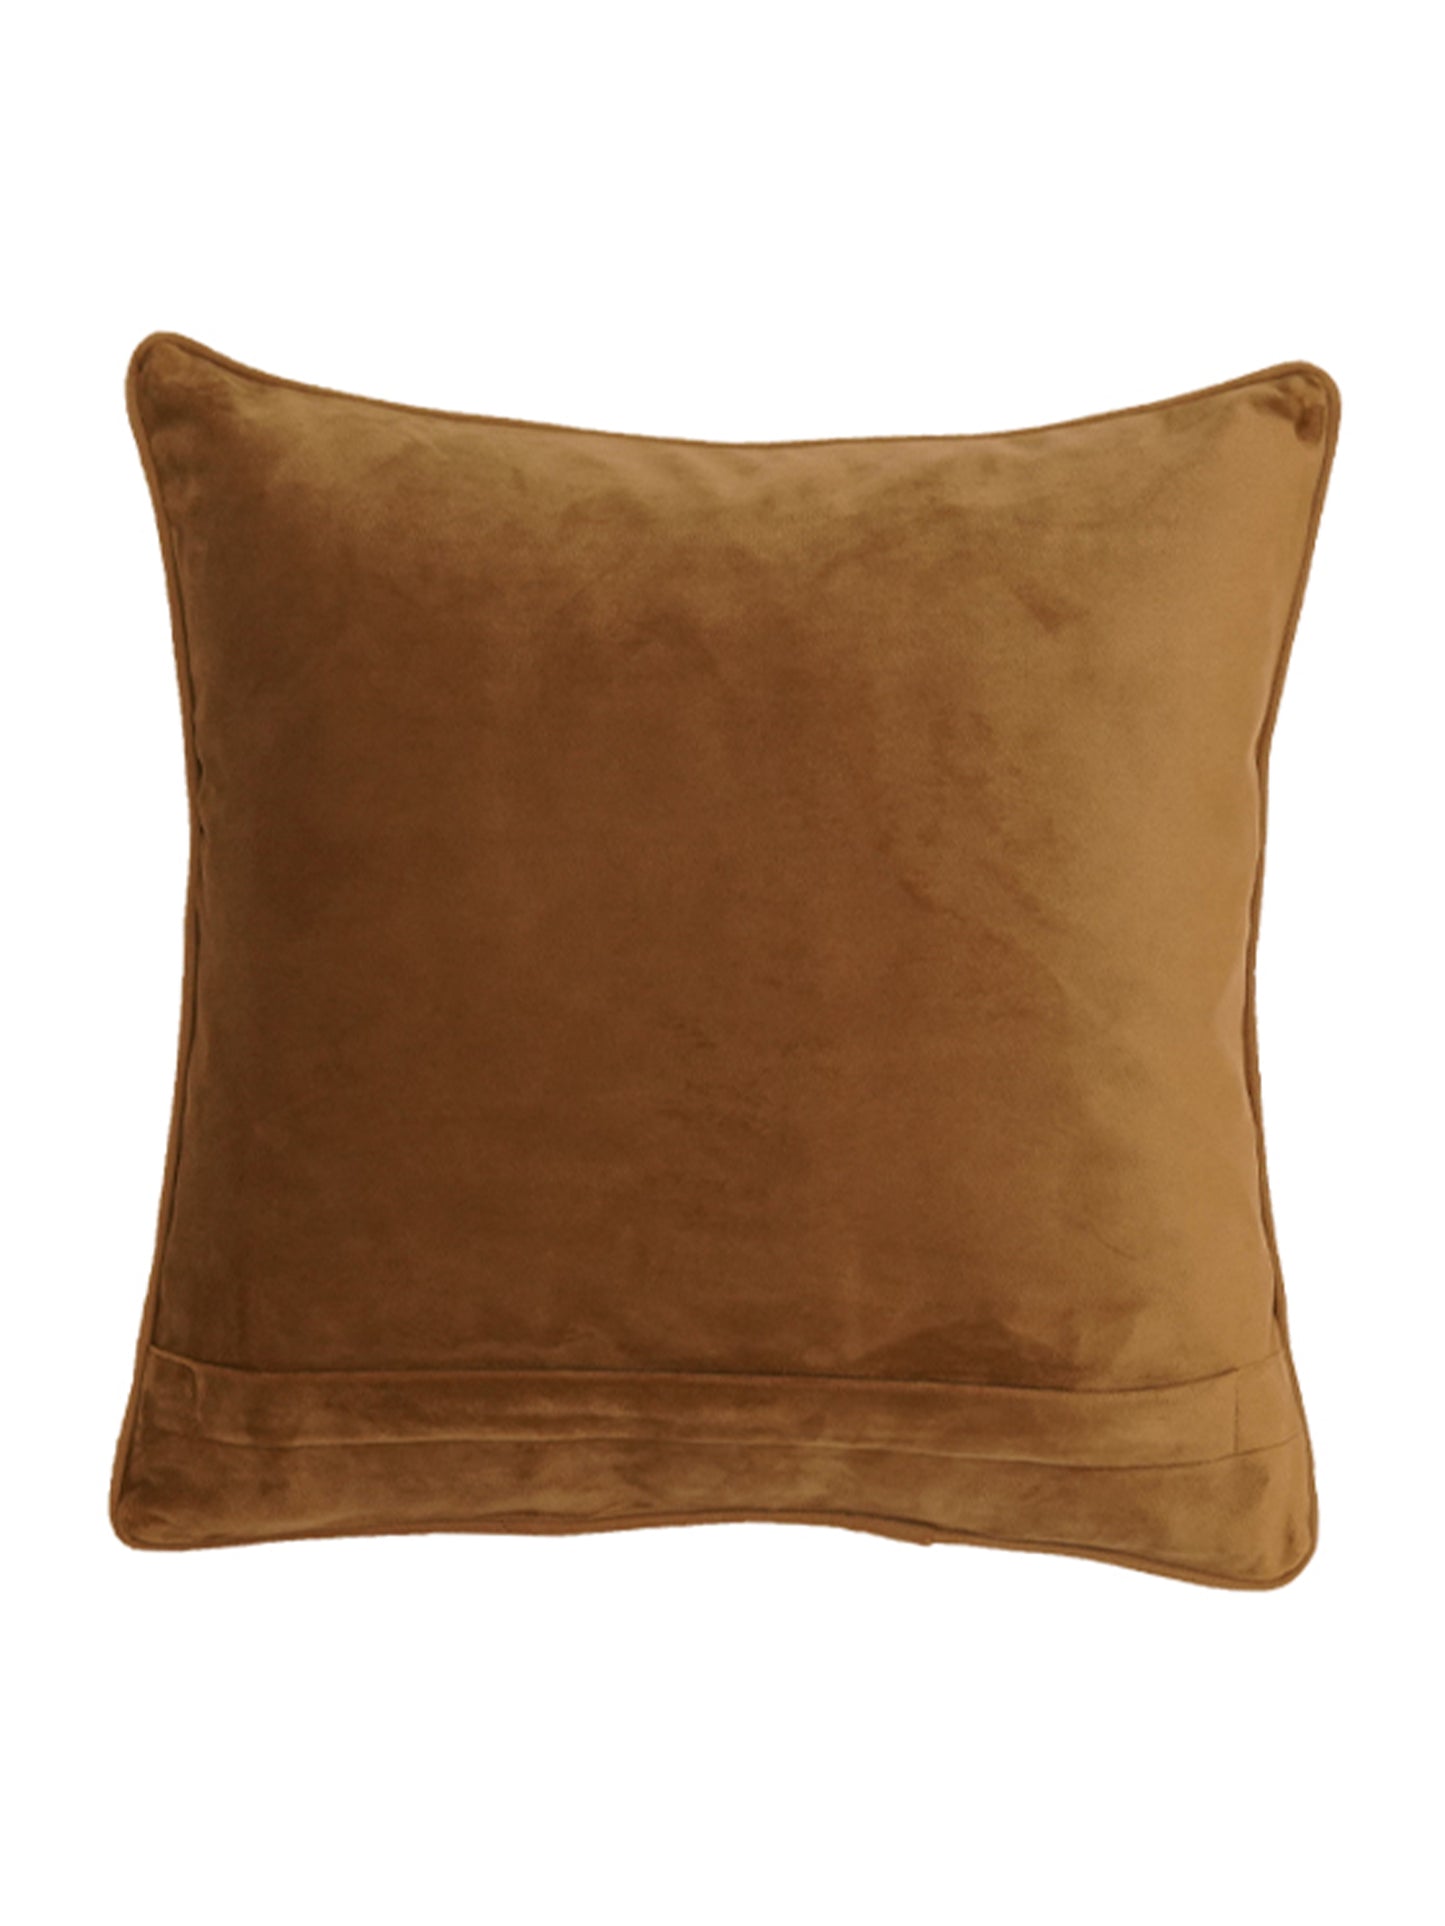 Peach Velvet Cushion Cover, 16x16 Inches, 40x40 cm